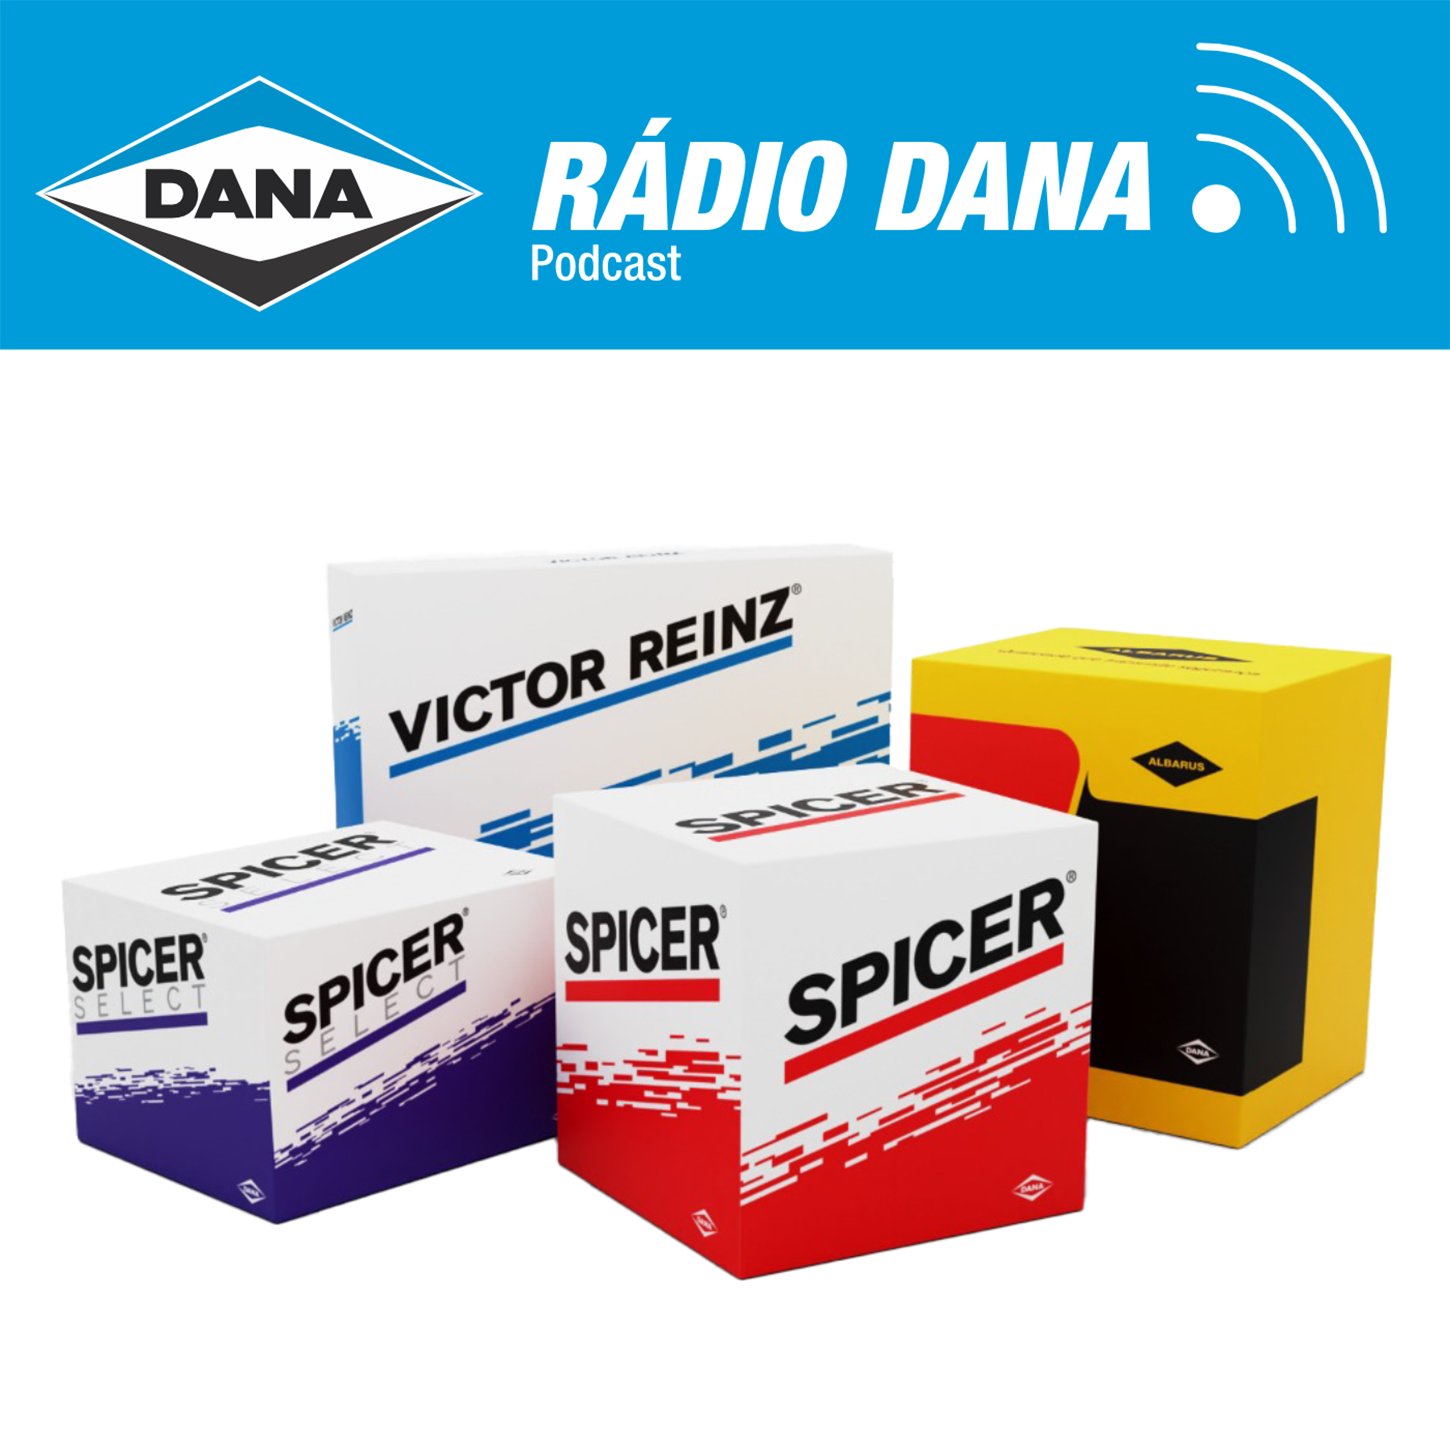 Episódio 125 - Rádio Dana - Dias Melhores pra Sempre!